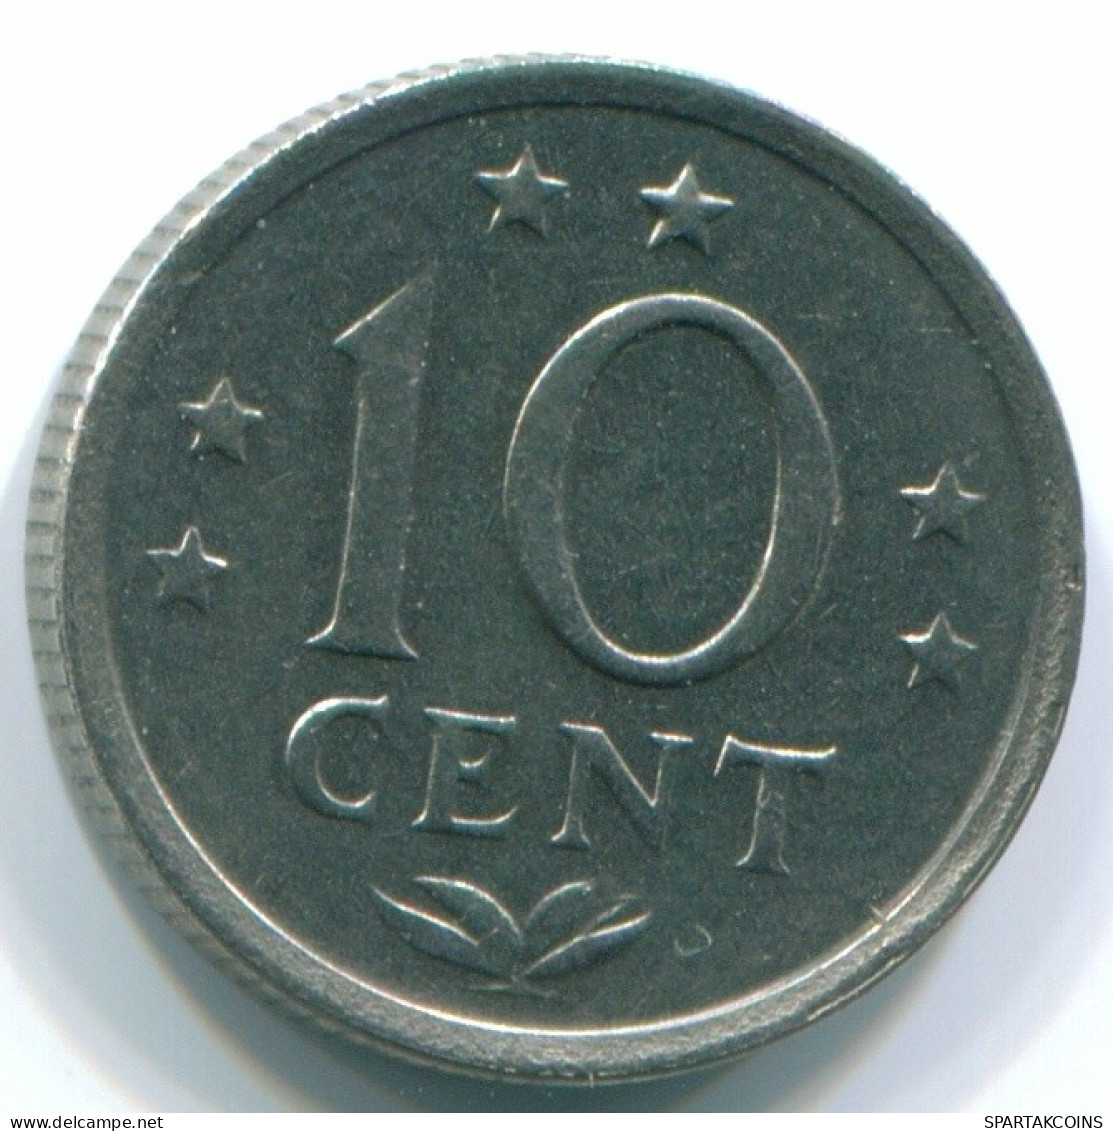 10 CENTS 1970 NIEDERLÄNDISCHE ANTILLEN Nickel Koloniale Münze #S13337.D.A - Niederländische Antillen